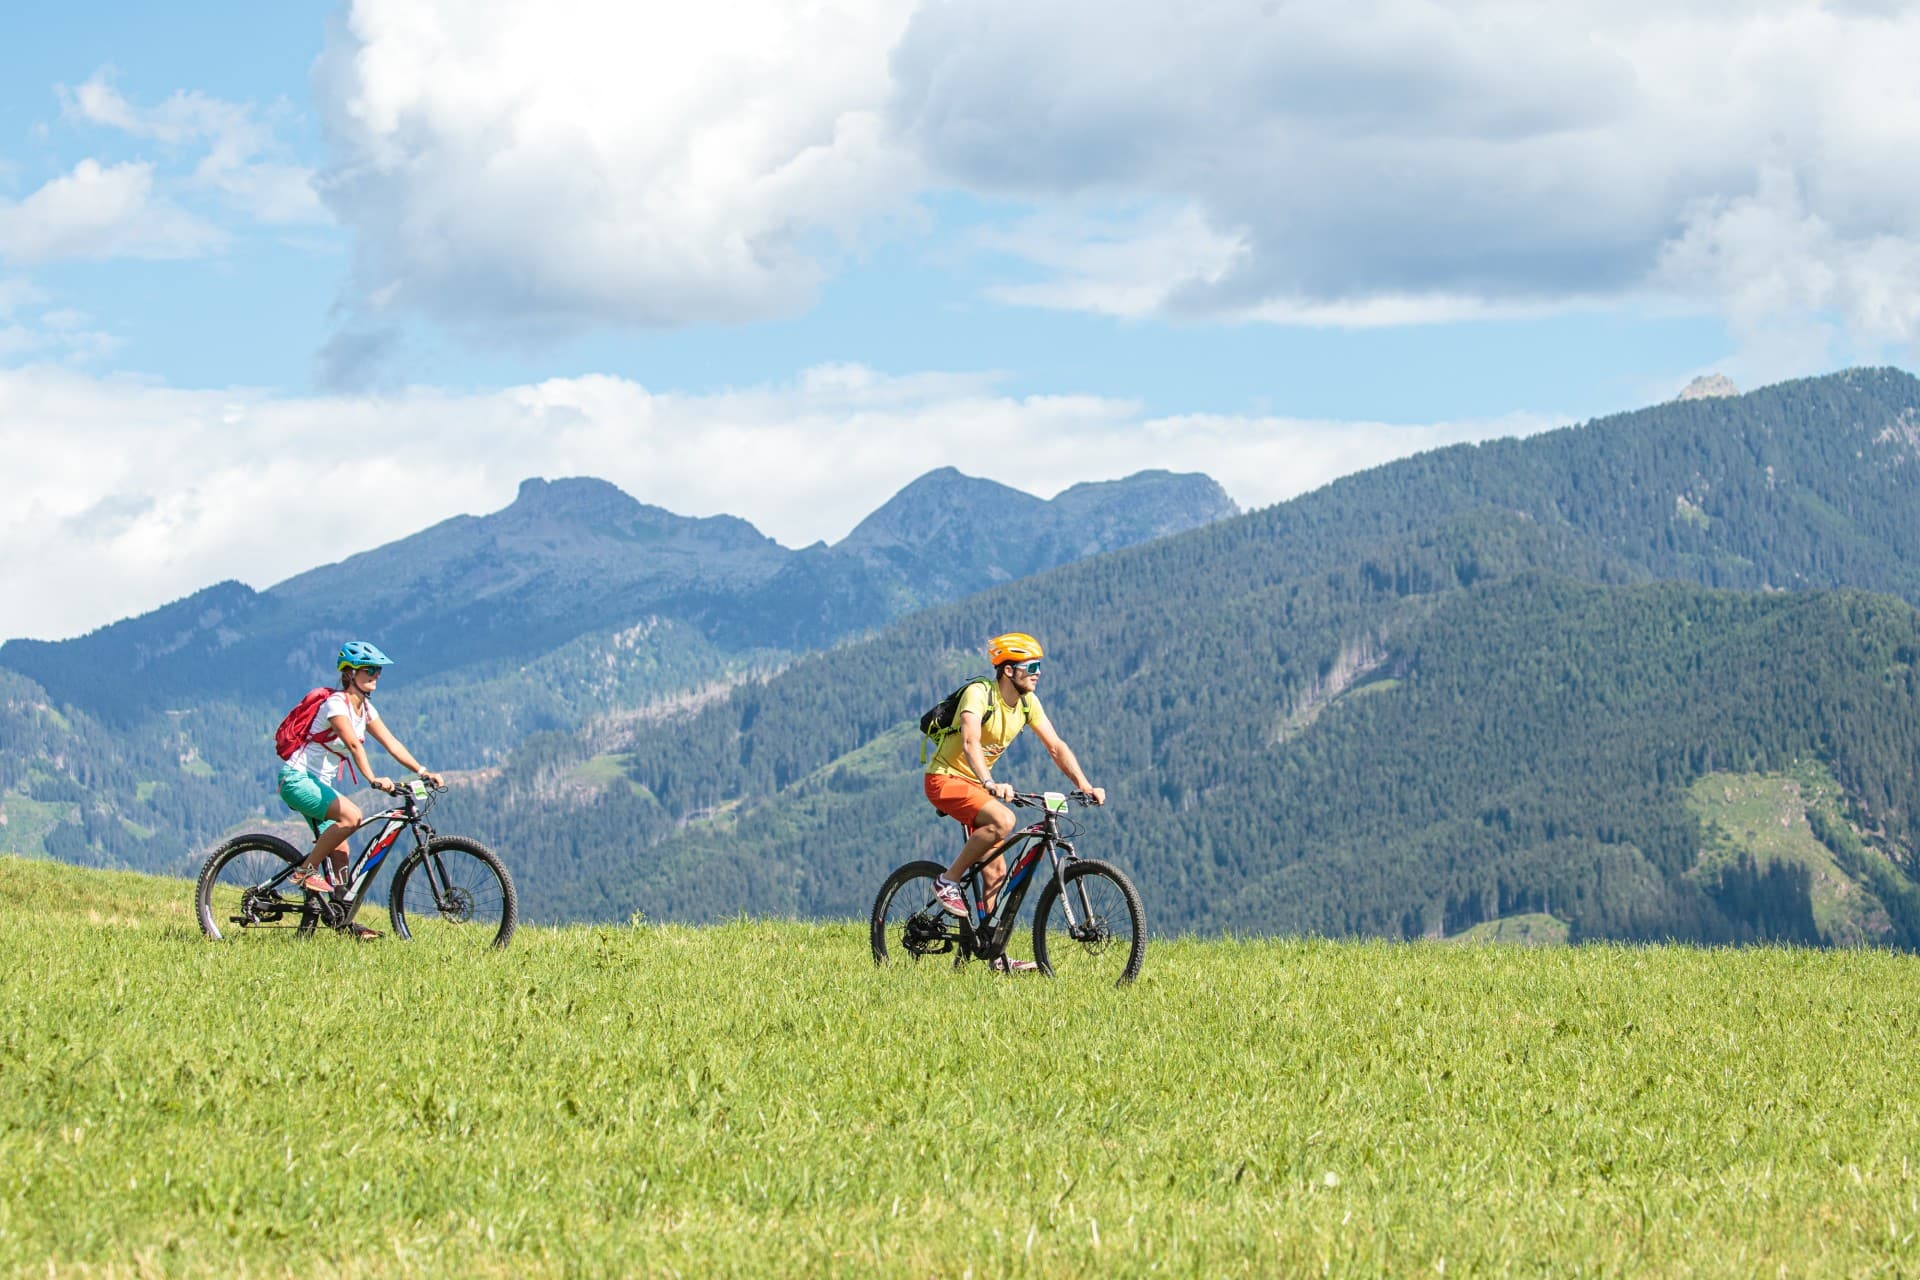 Tra le attività da praticare in Val di Fiemme, i tour in mountain bike